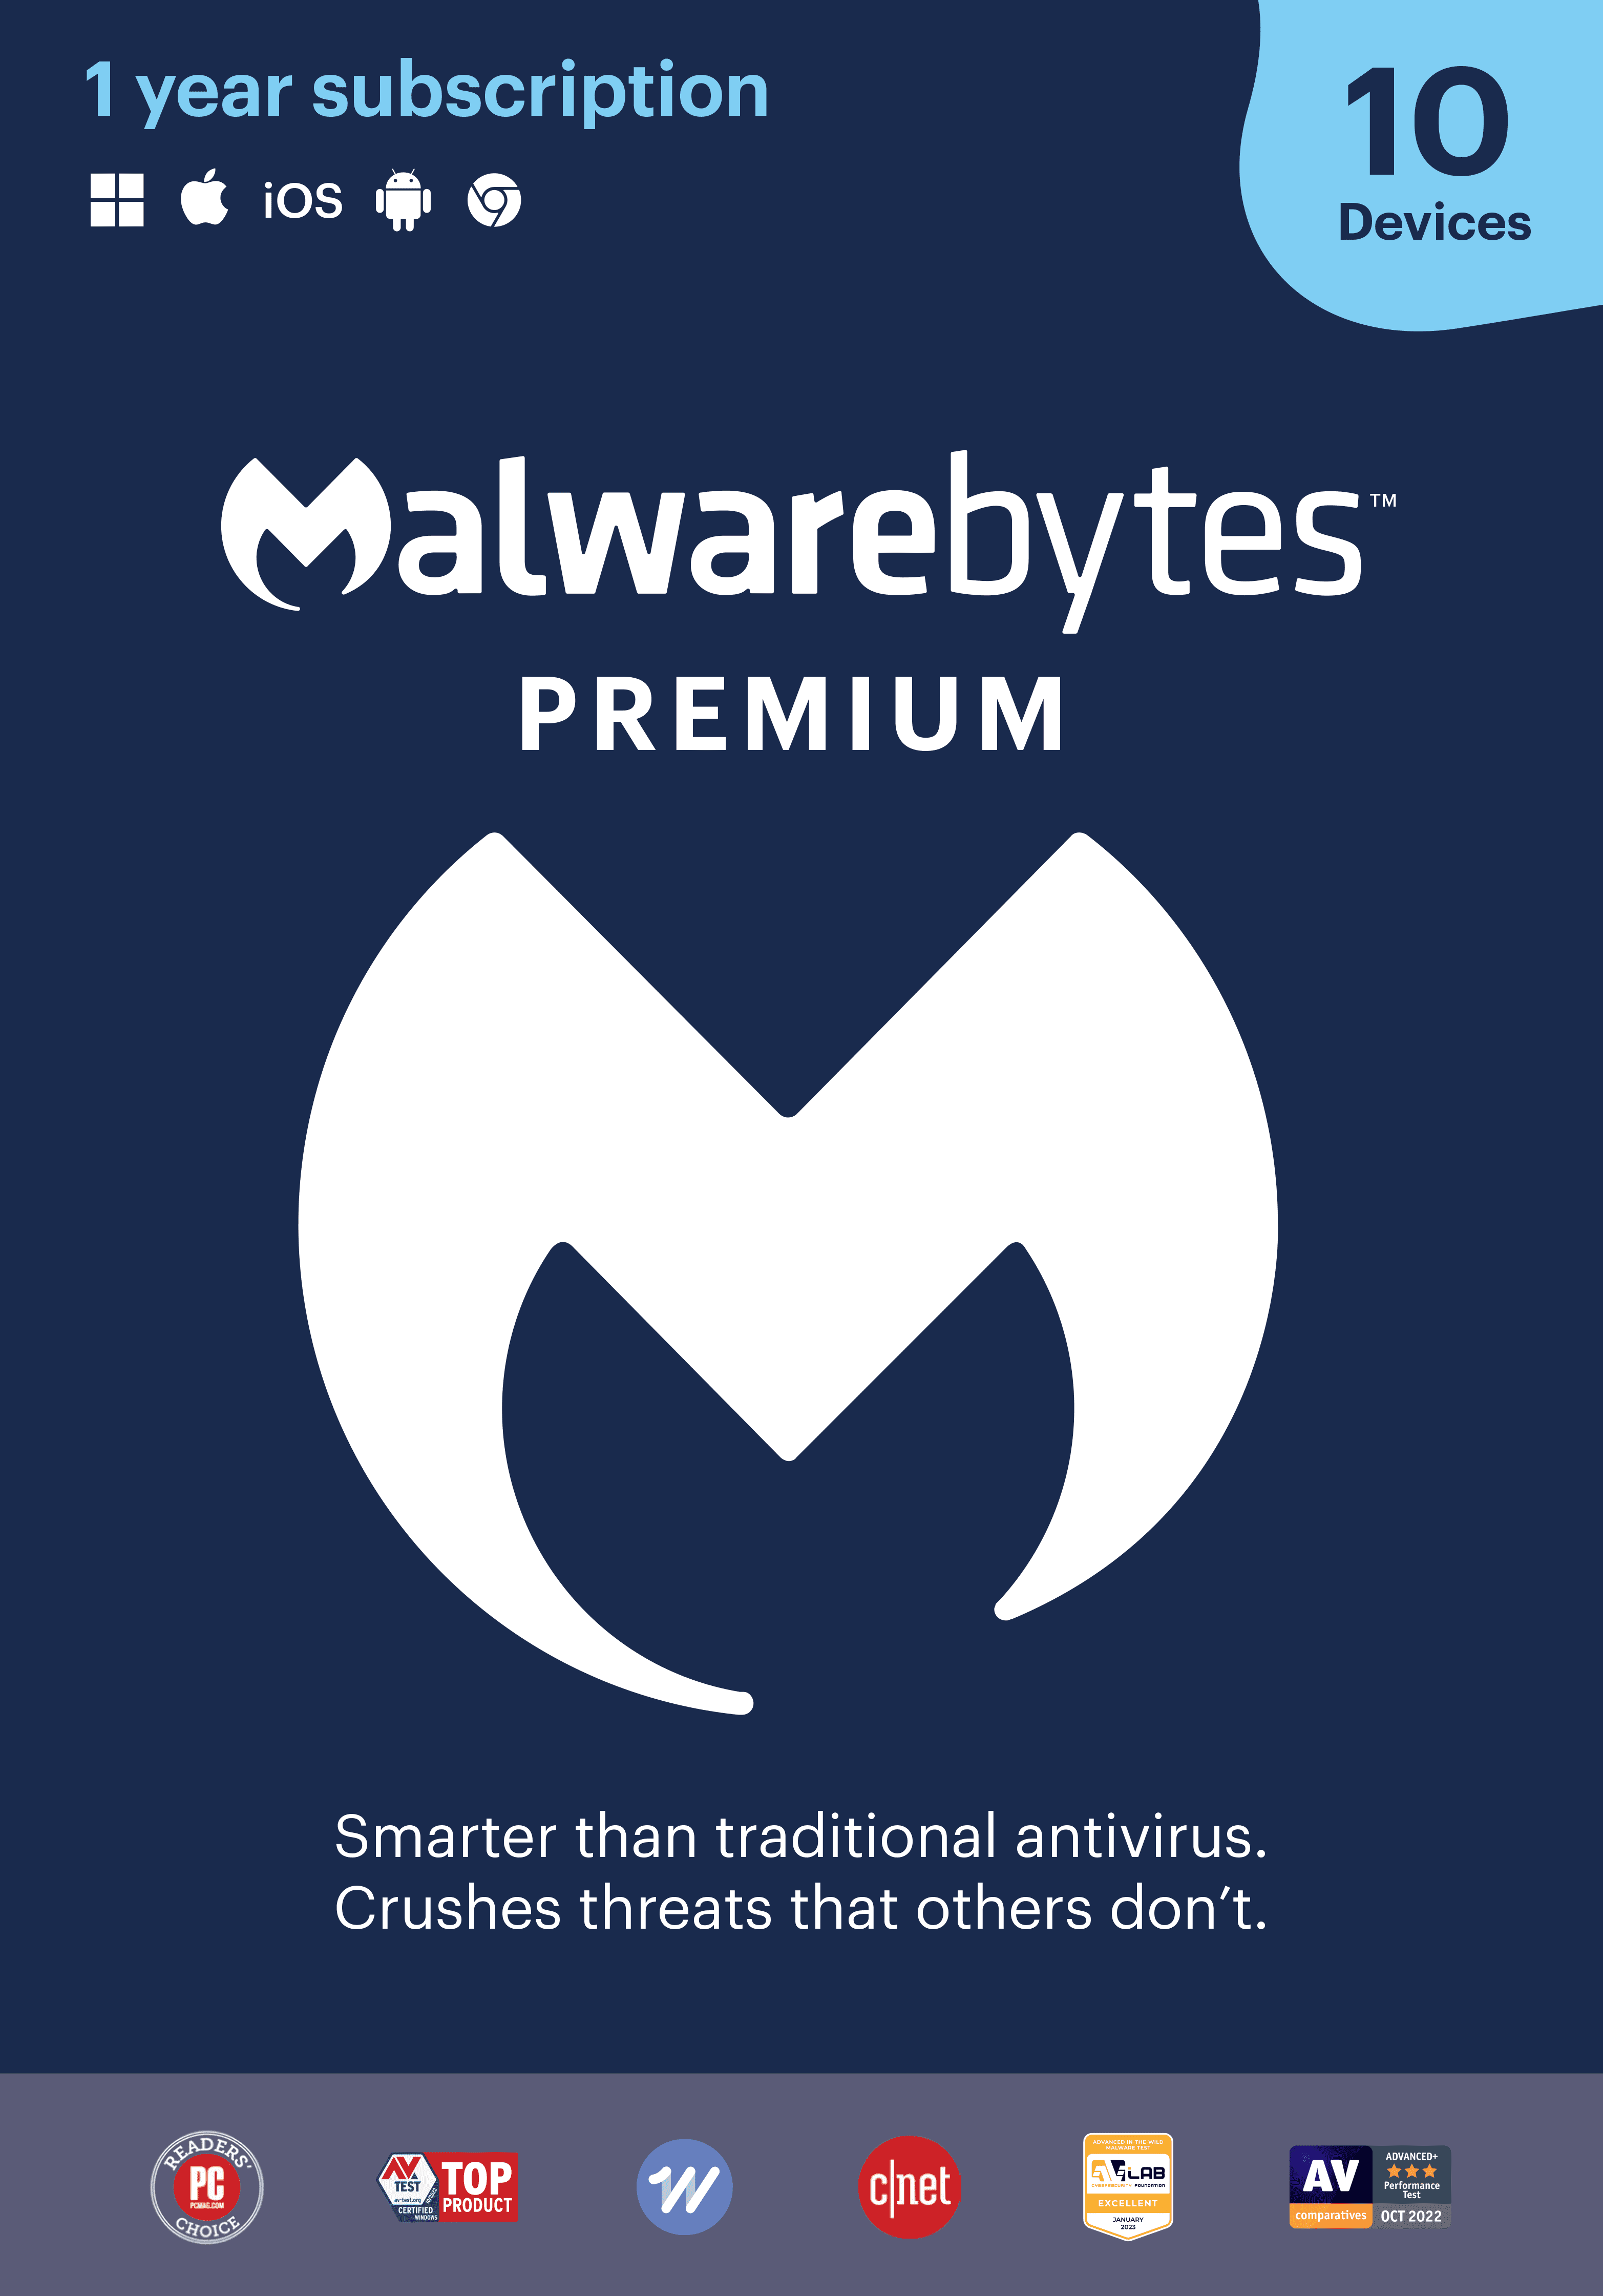 So sánh Malwarebytes Premium với các sản phẩm antivirus khác